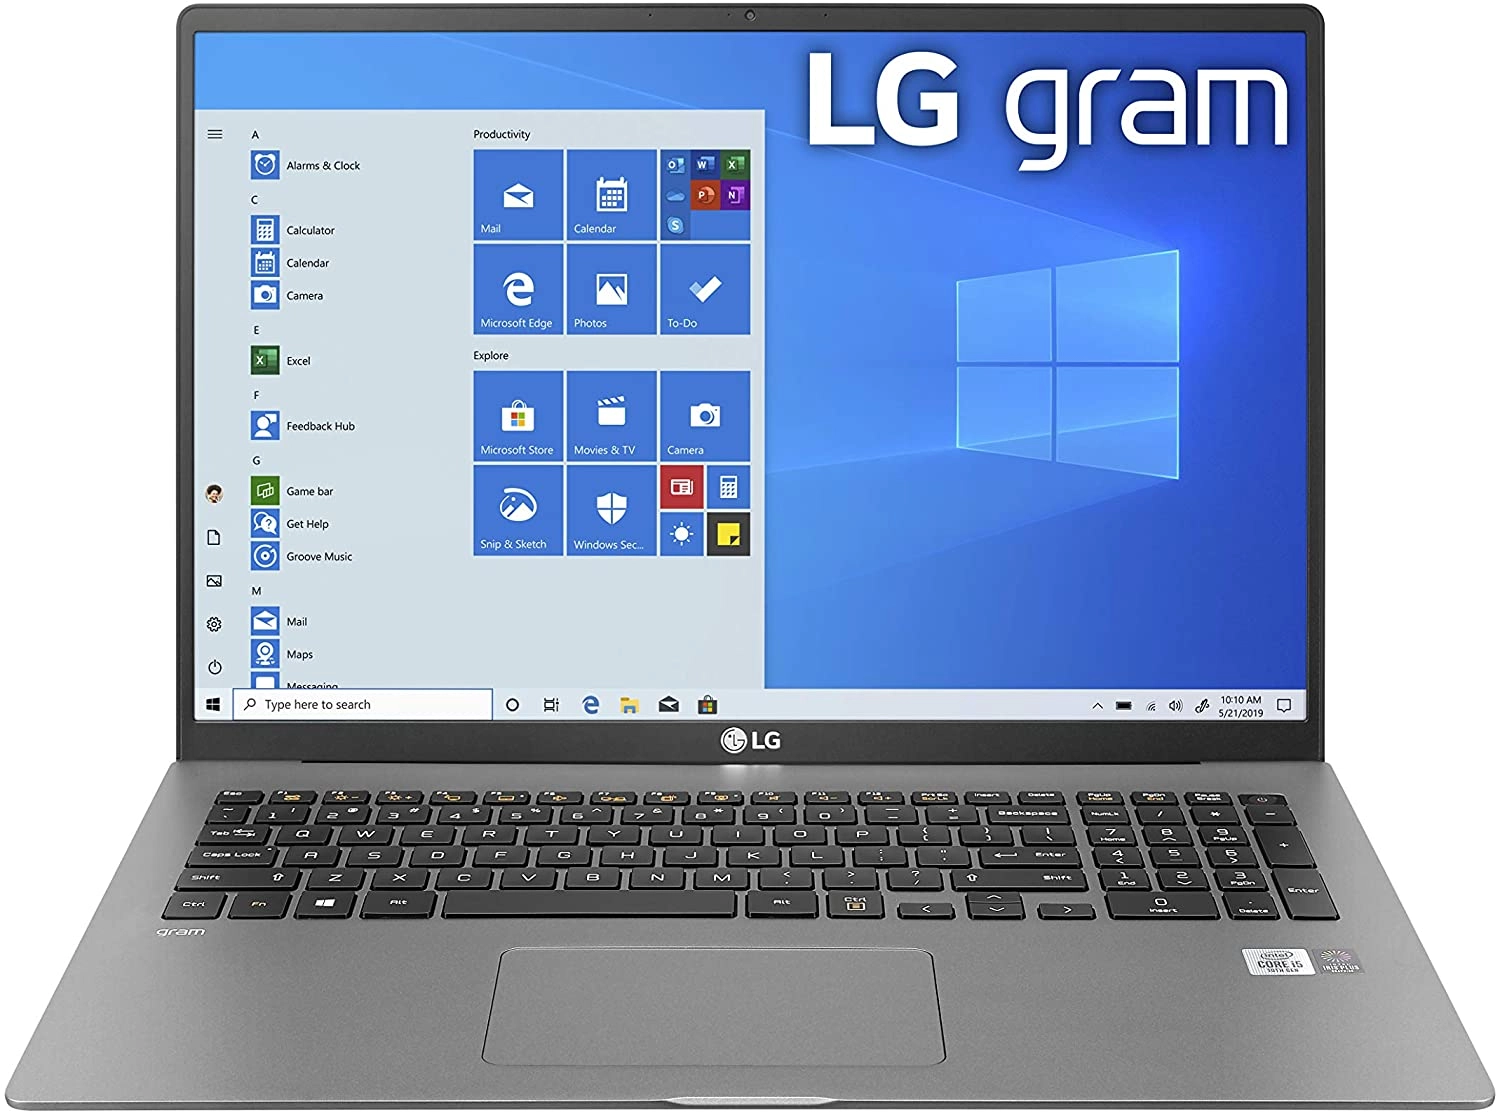 LG gram laptop image